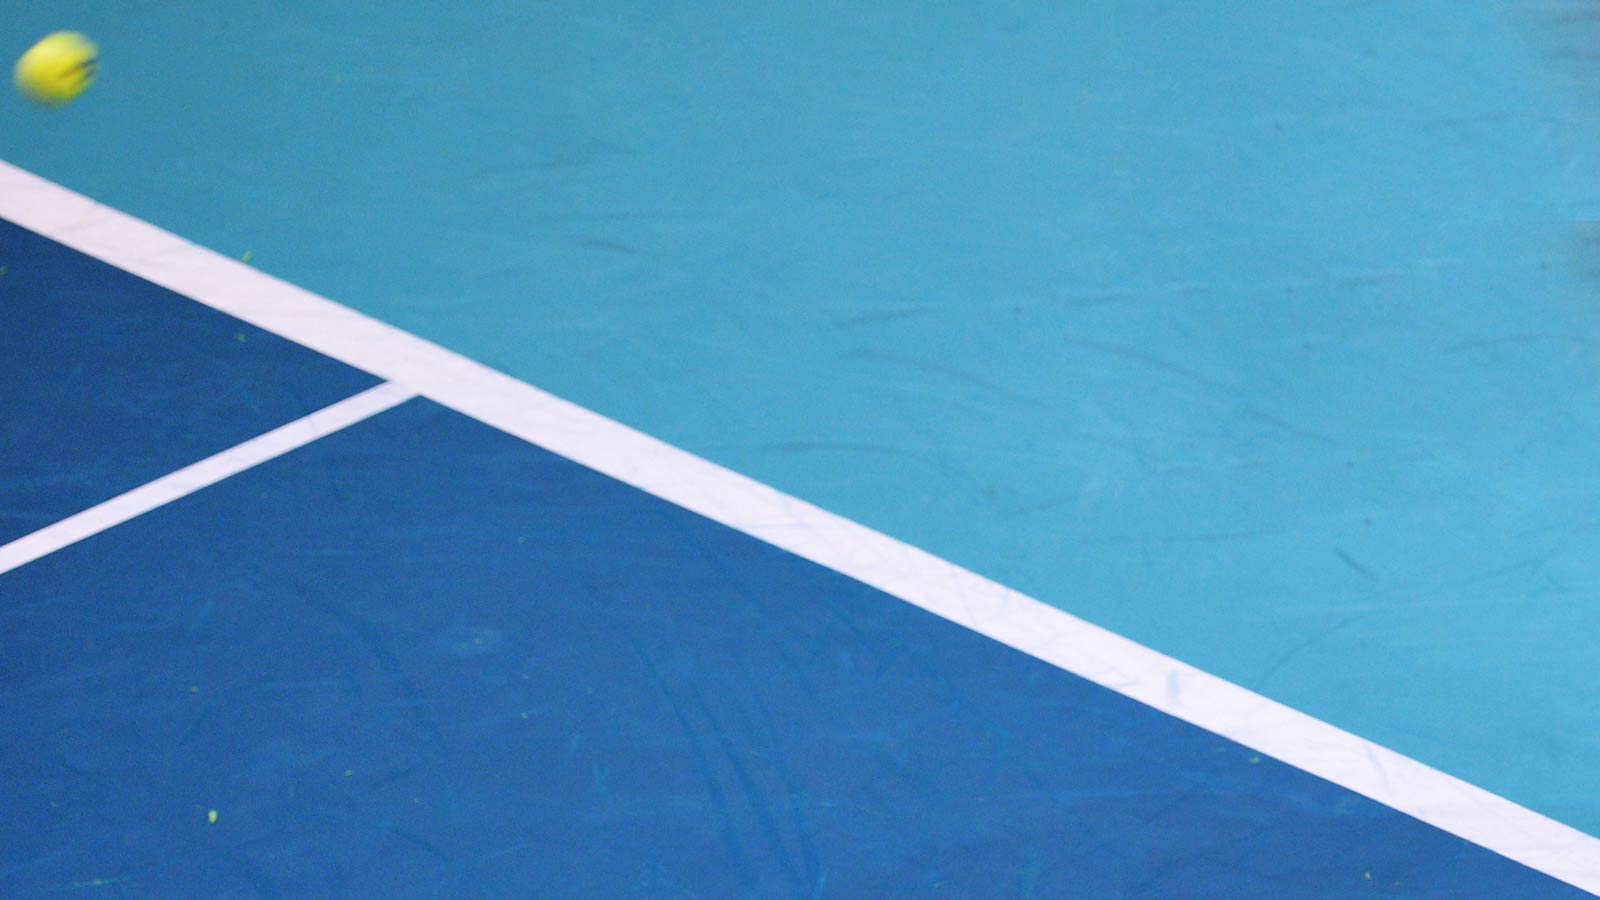 EN DIRECT / LIVE. Marin Cilic - Mikhail Youzhny - ATP Bâle - 24 ... - Eurosport.fr